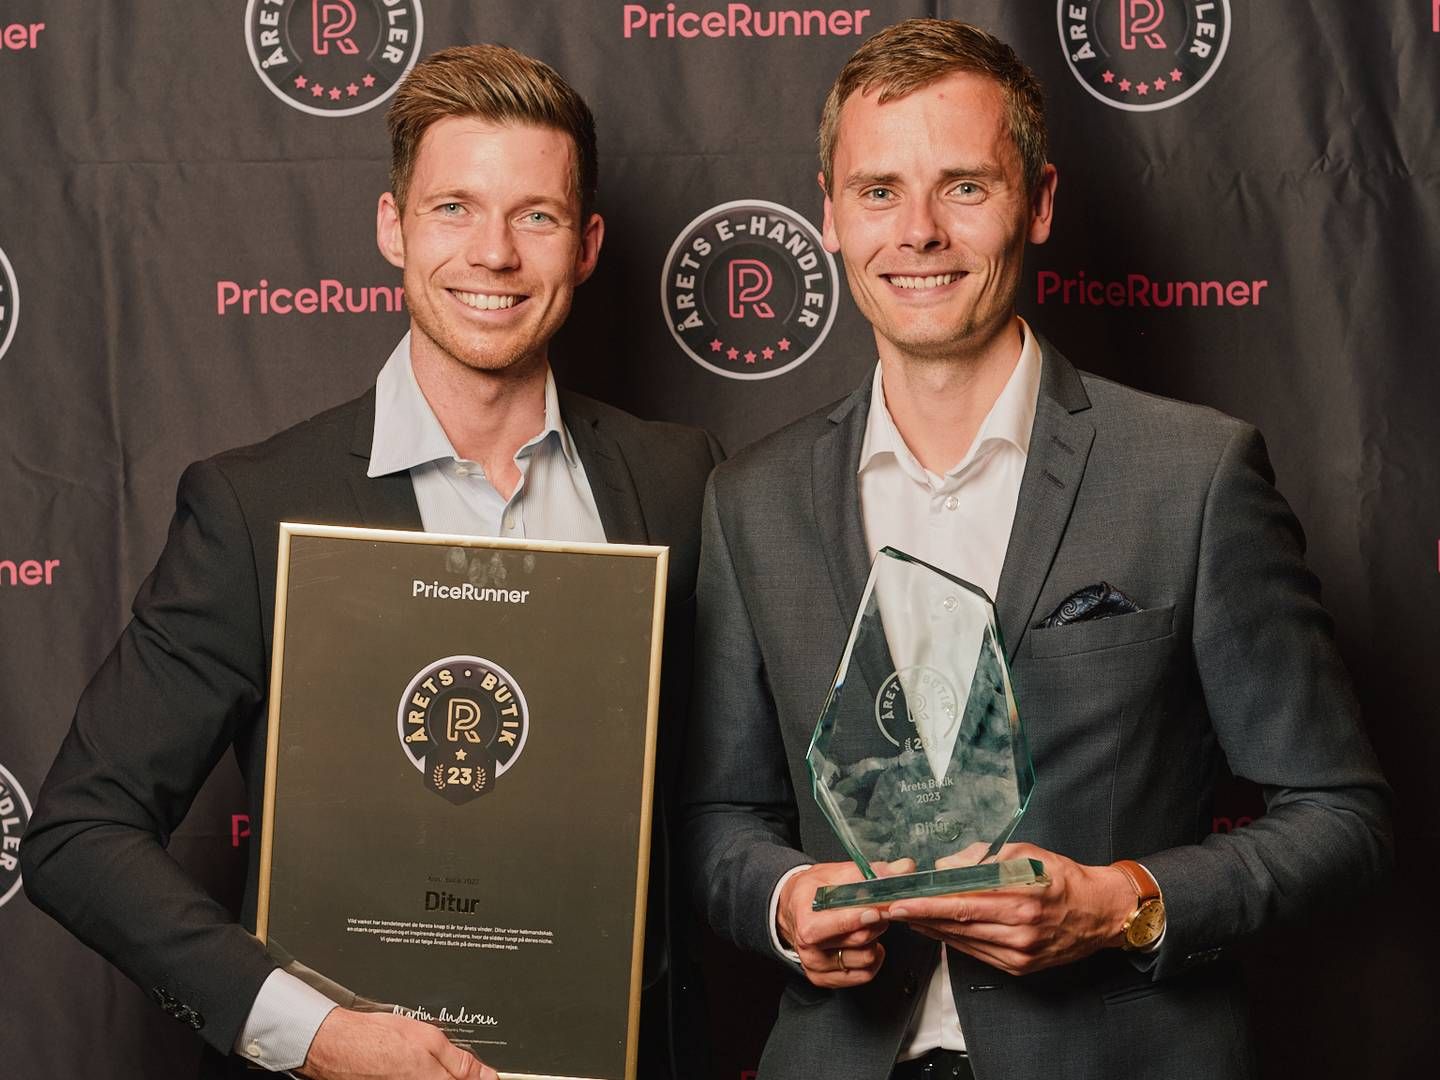 Ditur valgt hovedprisen som årets butik til Pricerunners prisuddeling. | Foto: Pricerunner